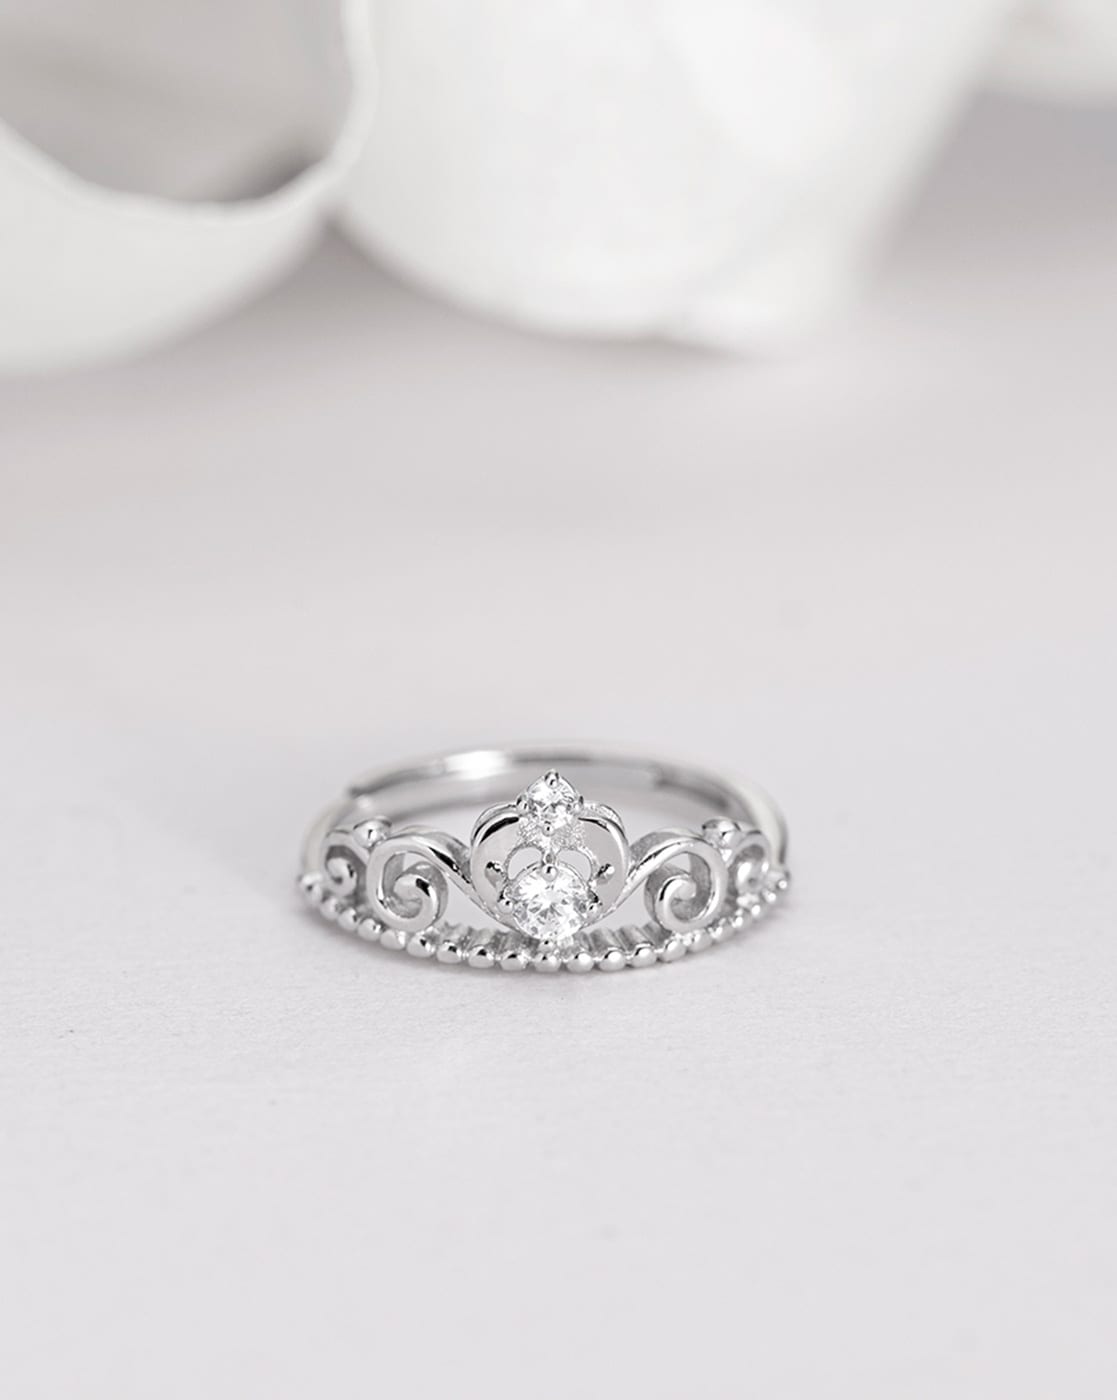 Adjustable Princess Crown AAA Zirconia 925 Sterling Silver Engagement Rings  | eBay